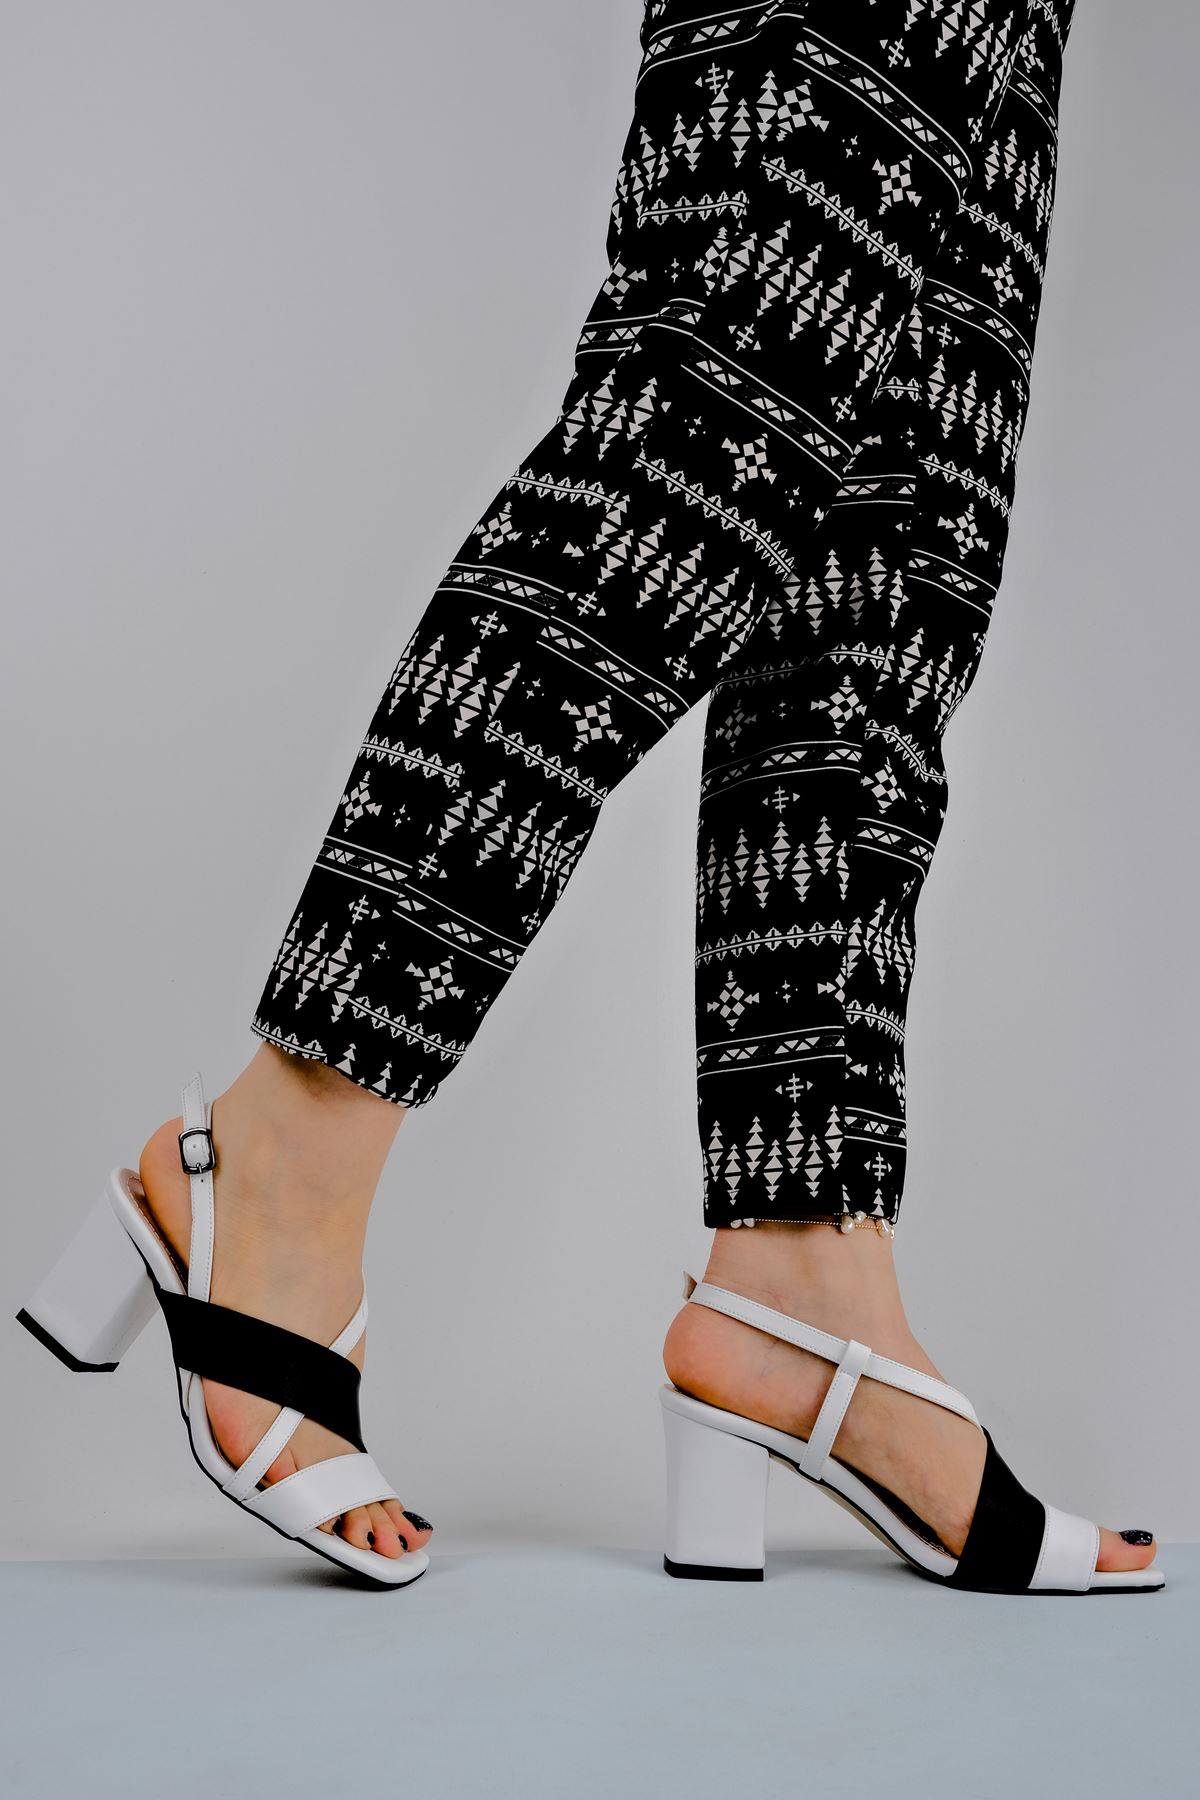 Kadın Topuklu Ayakkabı Renkli Çapraz Detaylı-siyah